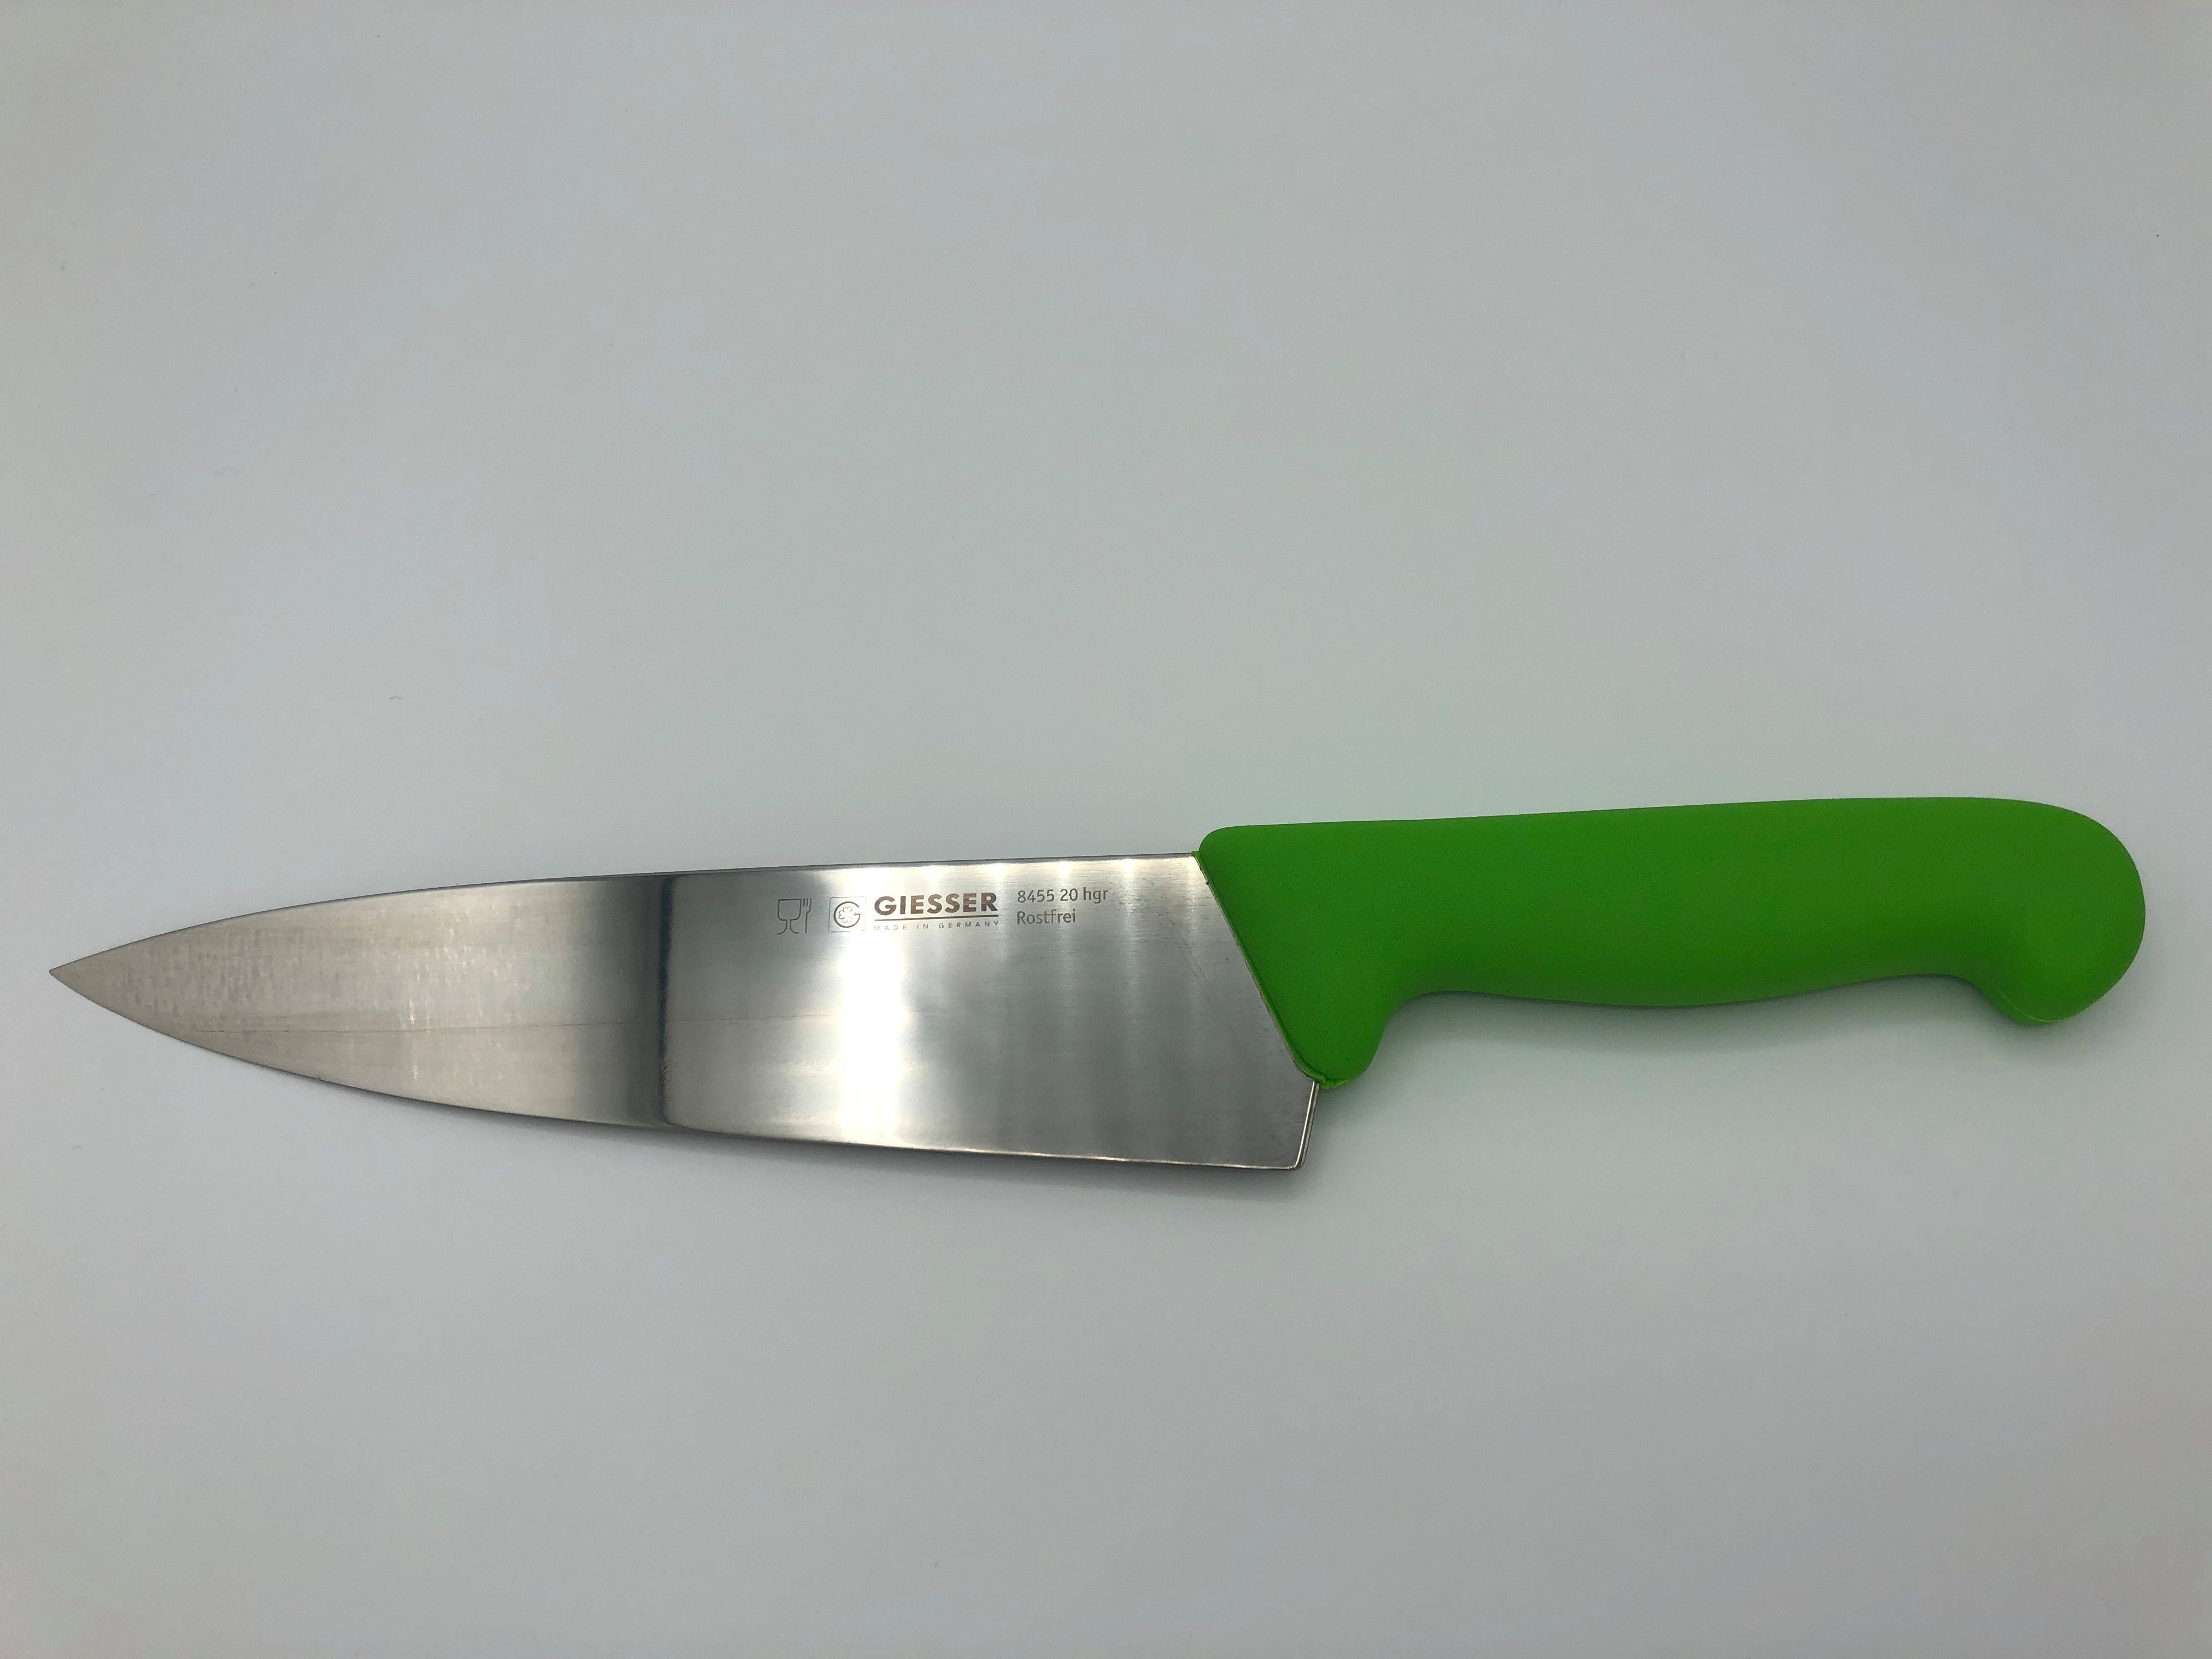 Giesser Messer Kochmesser Küchenmesser breit 8455, Rostfrei, breite Form, scharf, Handabzug, Ideal für jede Küche hellgrün